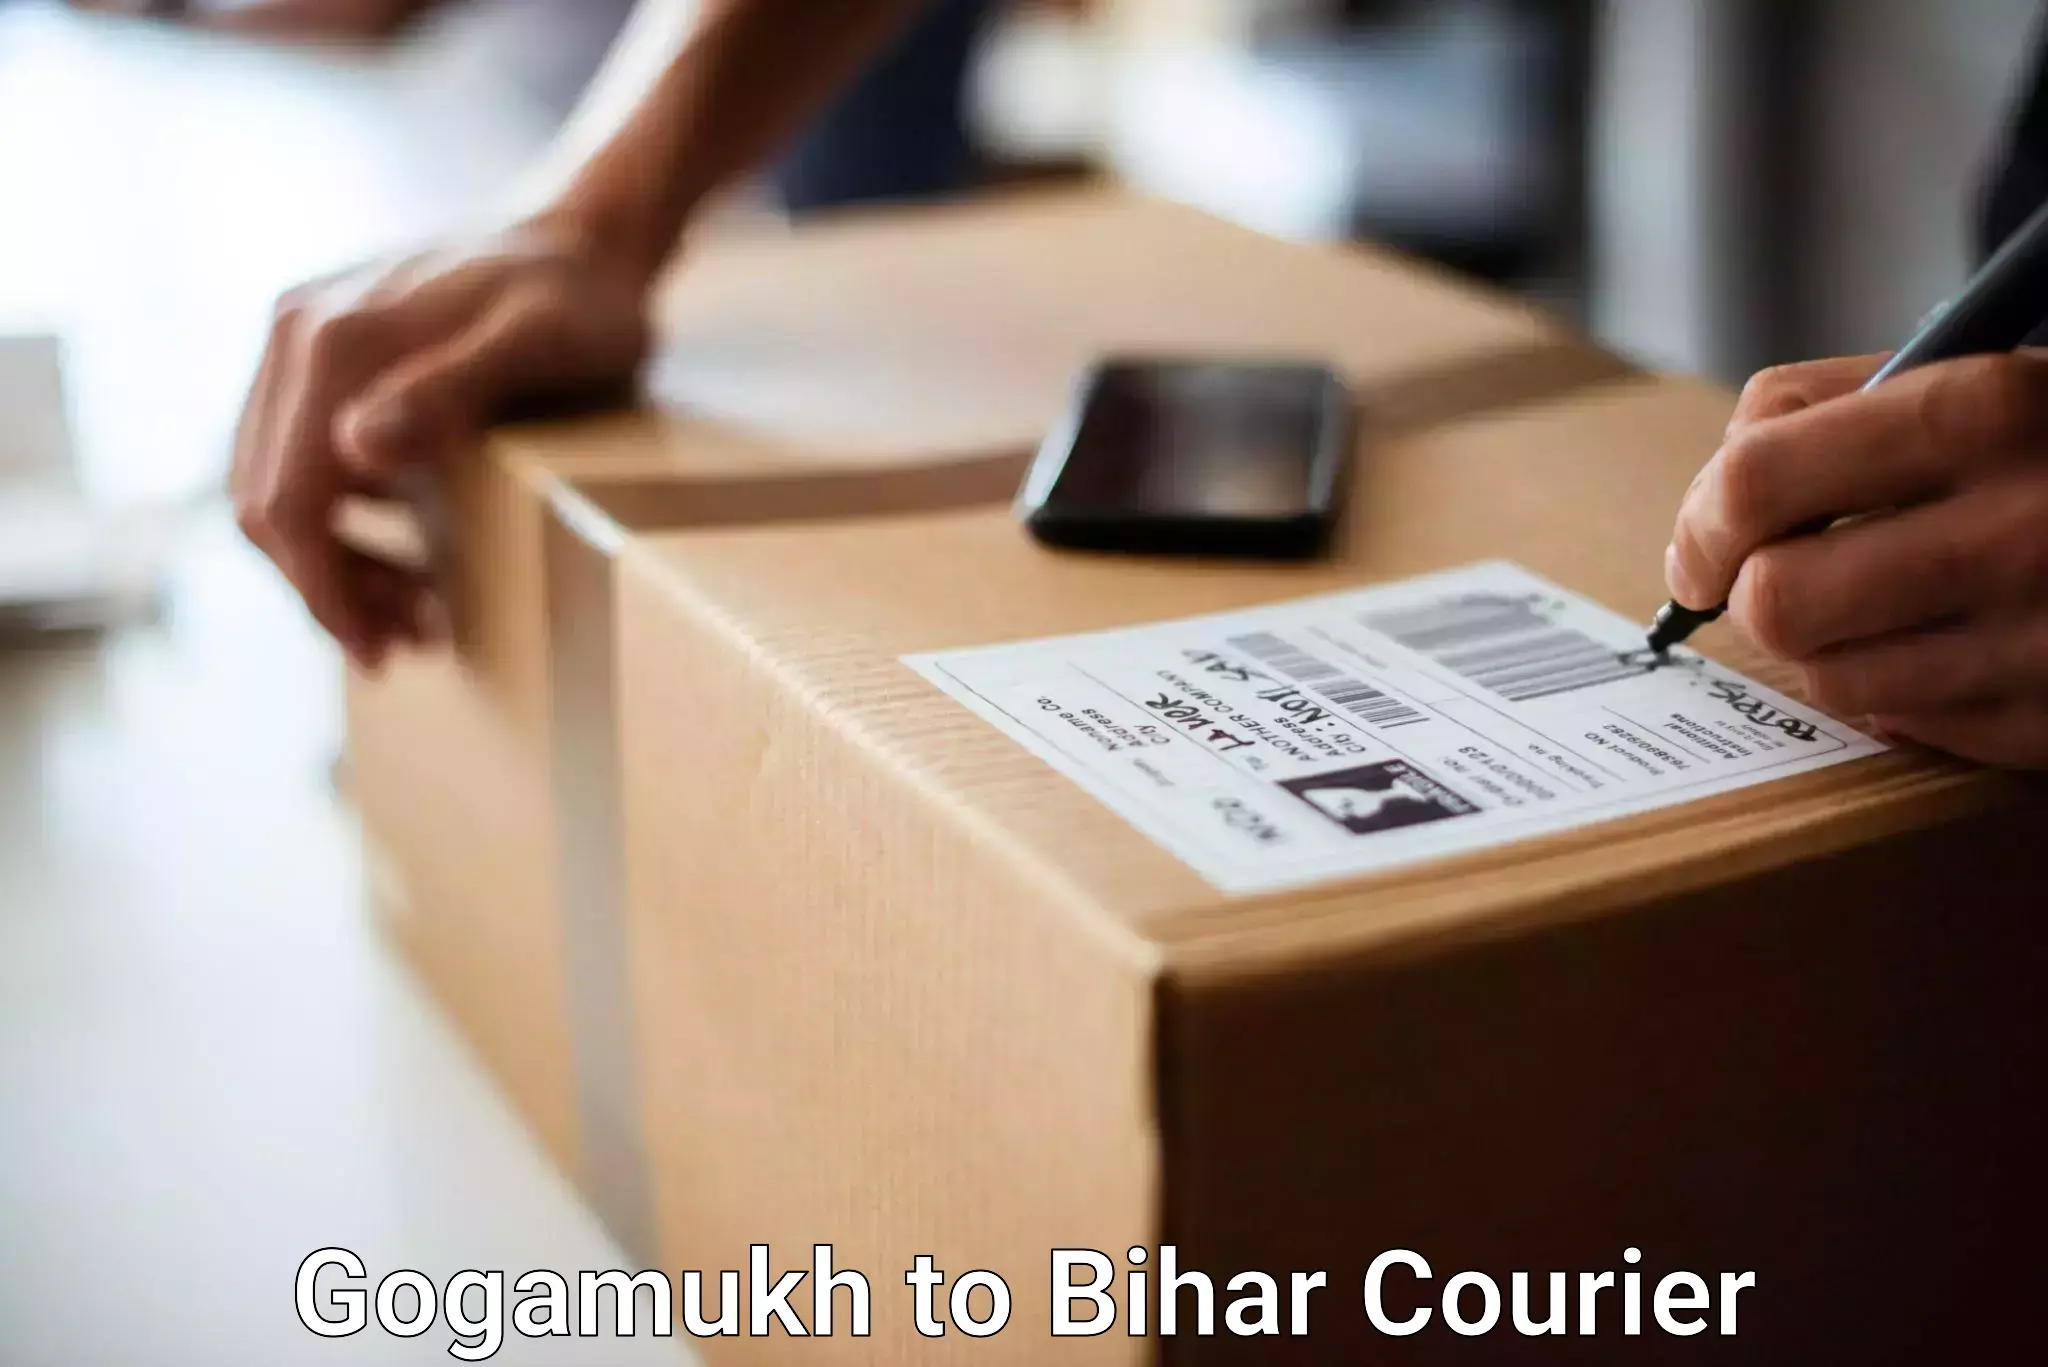 Luggage shipment specialists Gogamukh to Raxaul